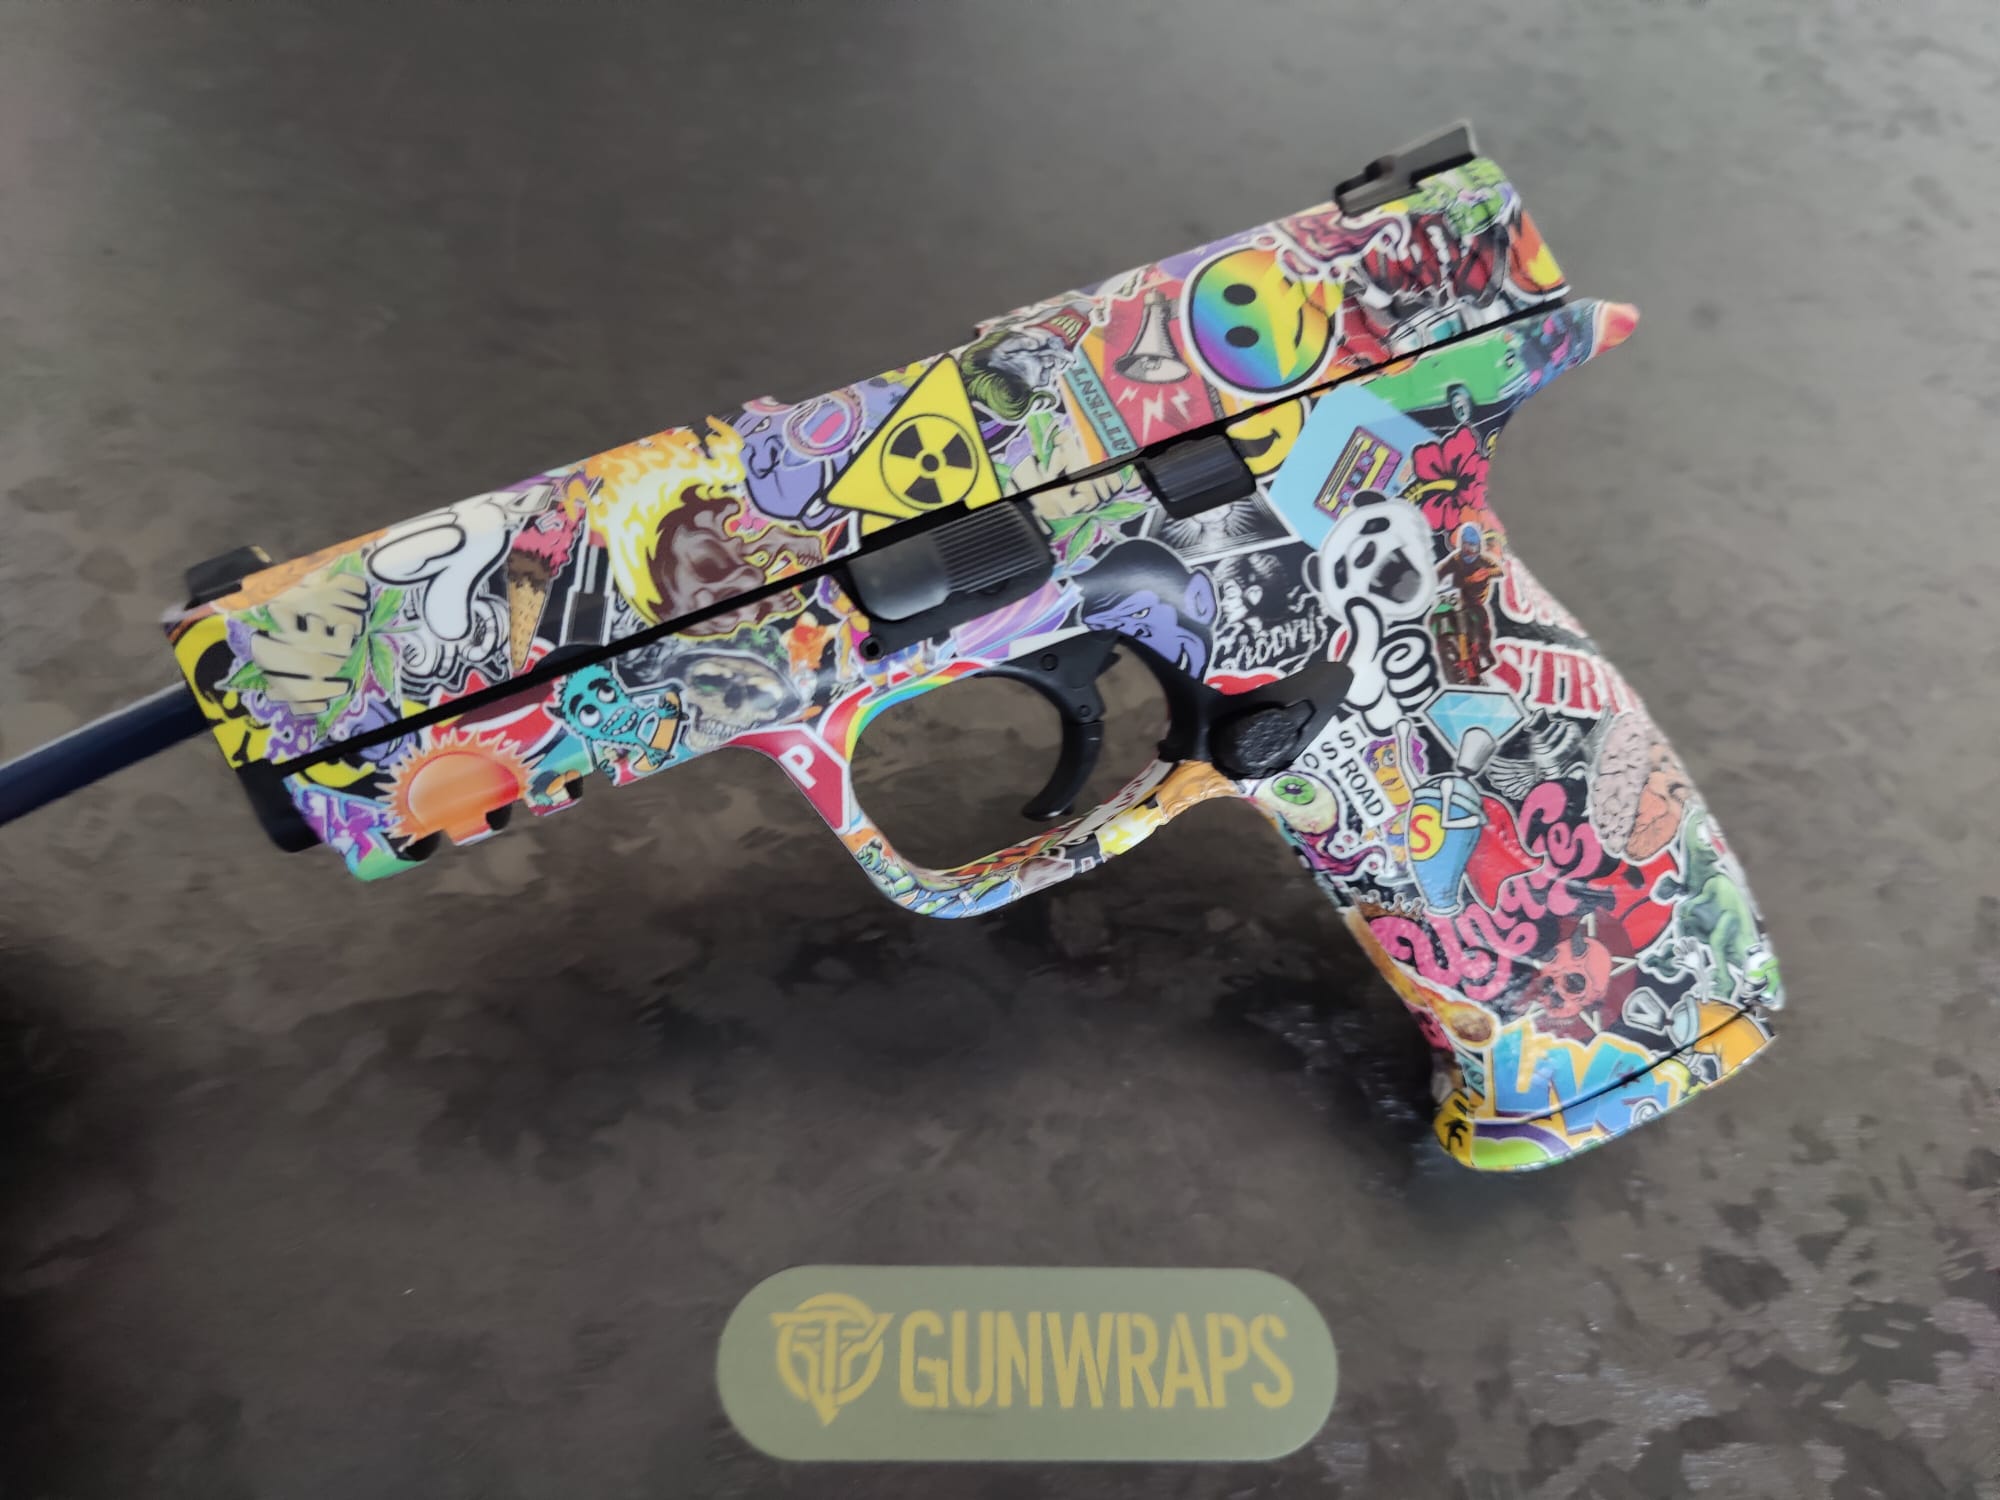 GunWraps  Custom Gun Wraps - Sworn to Protect & Style